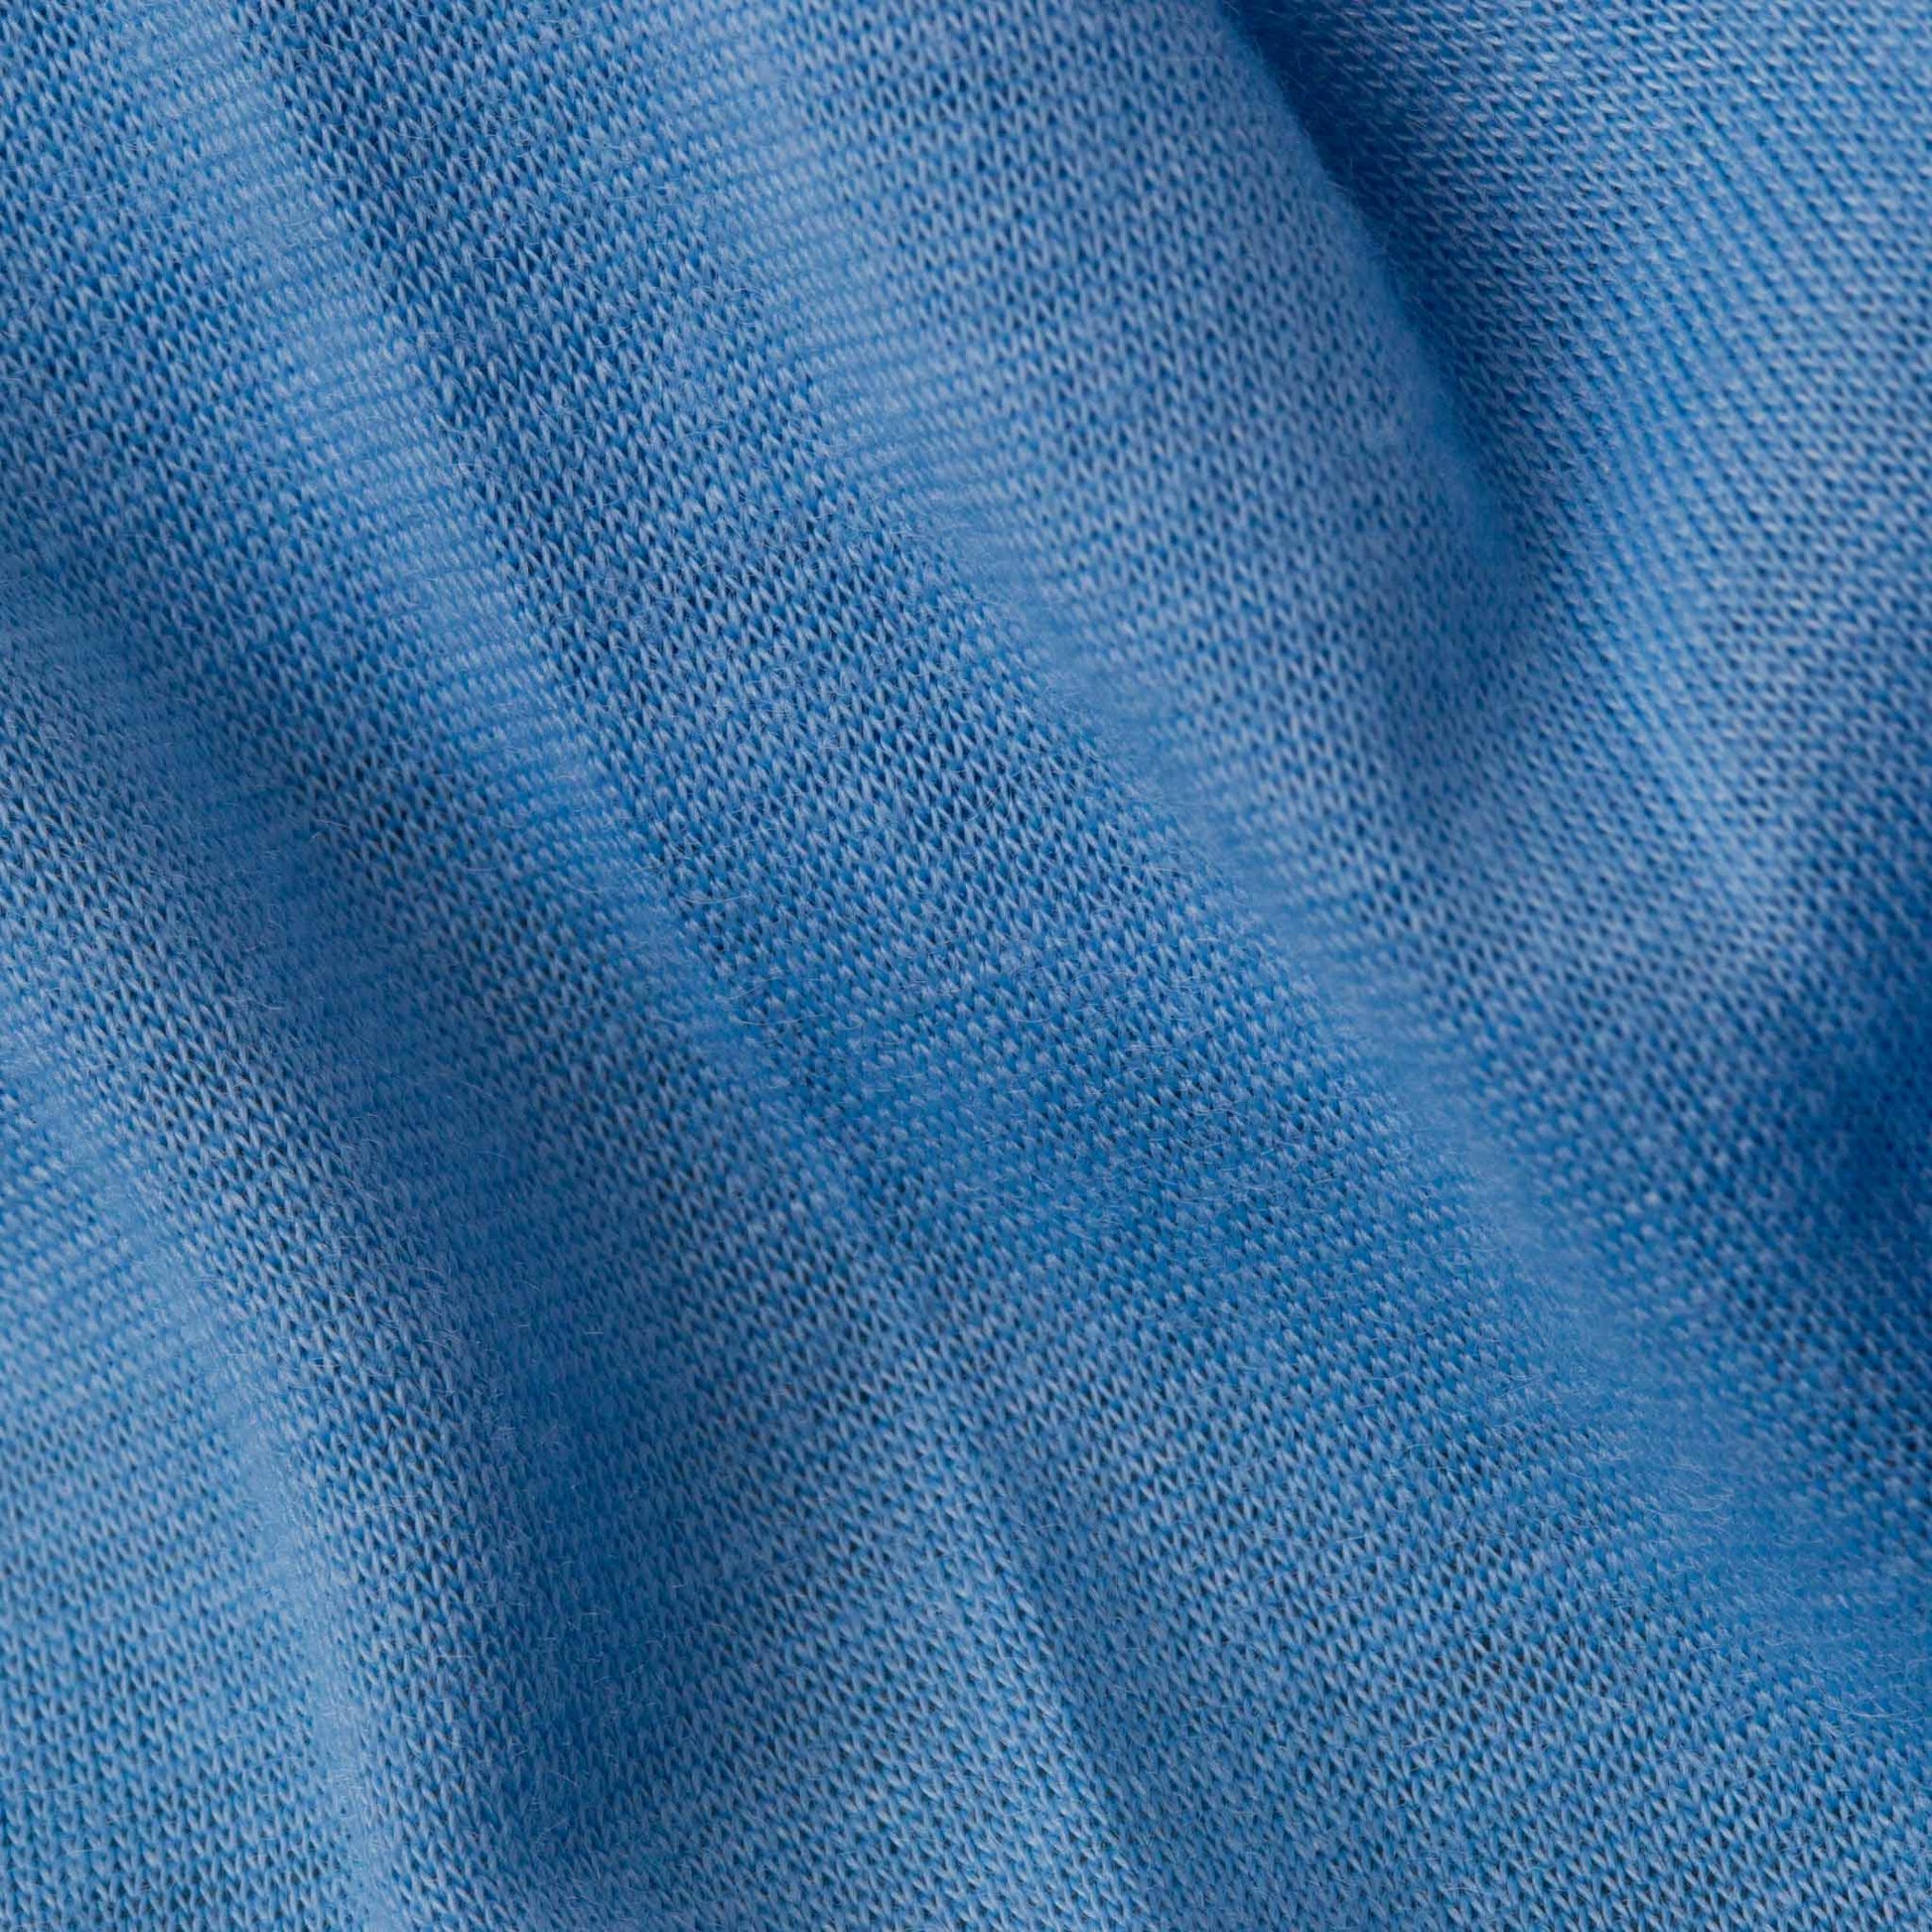 Bentiță de păr lată tip batic, moale și comodă din bumbac - Albastru